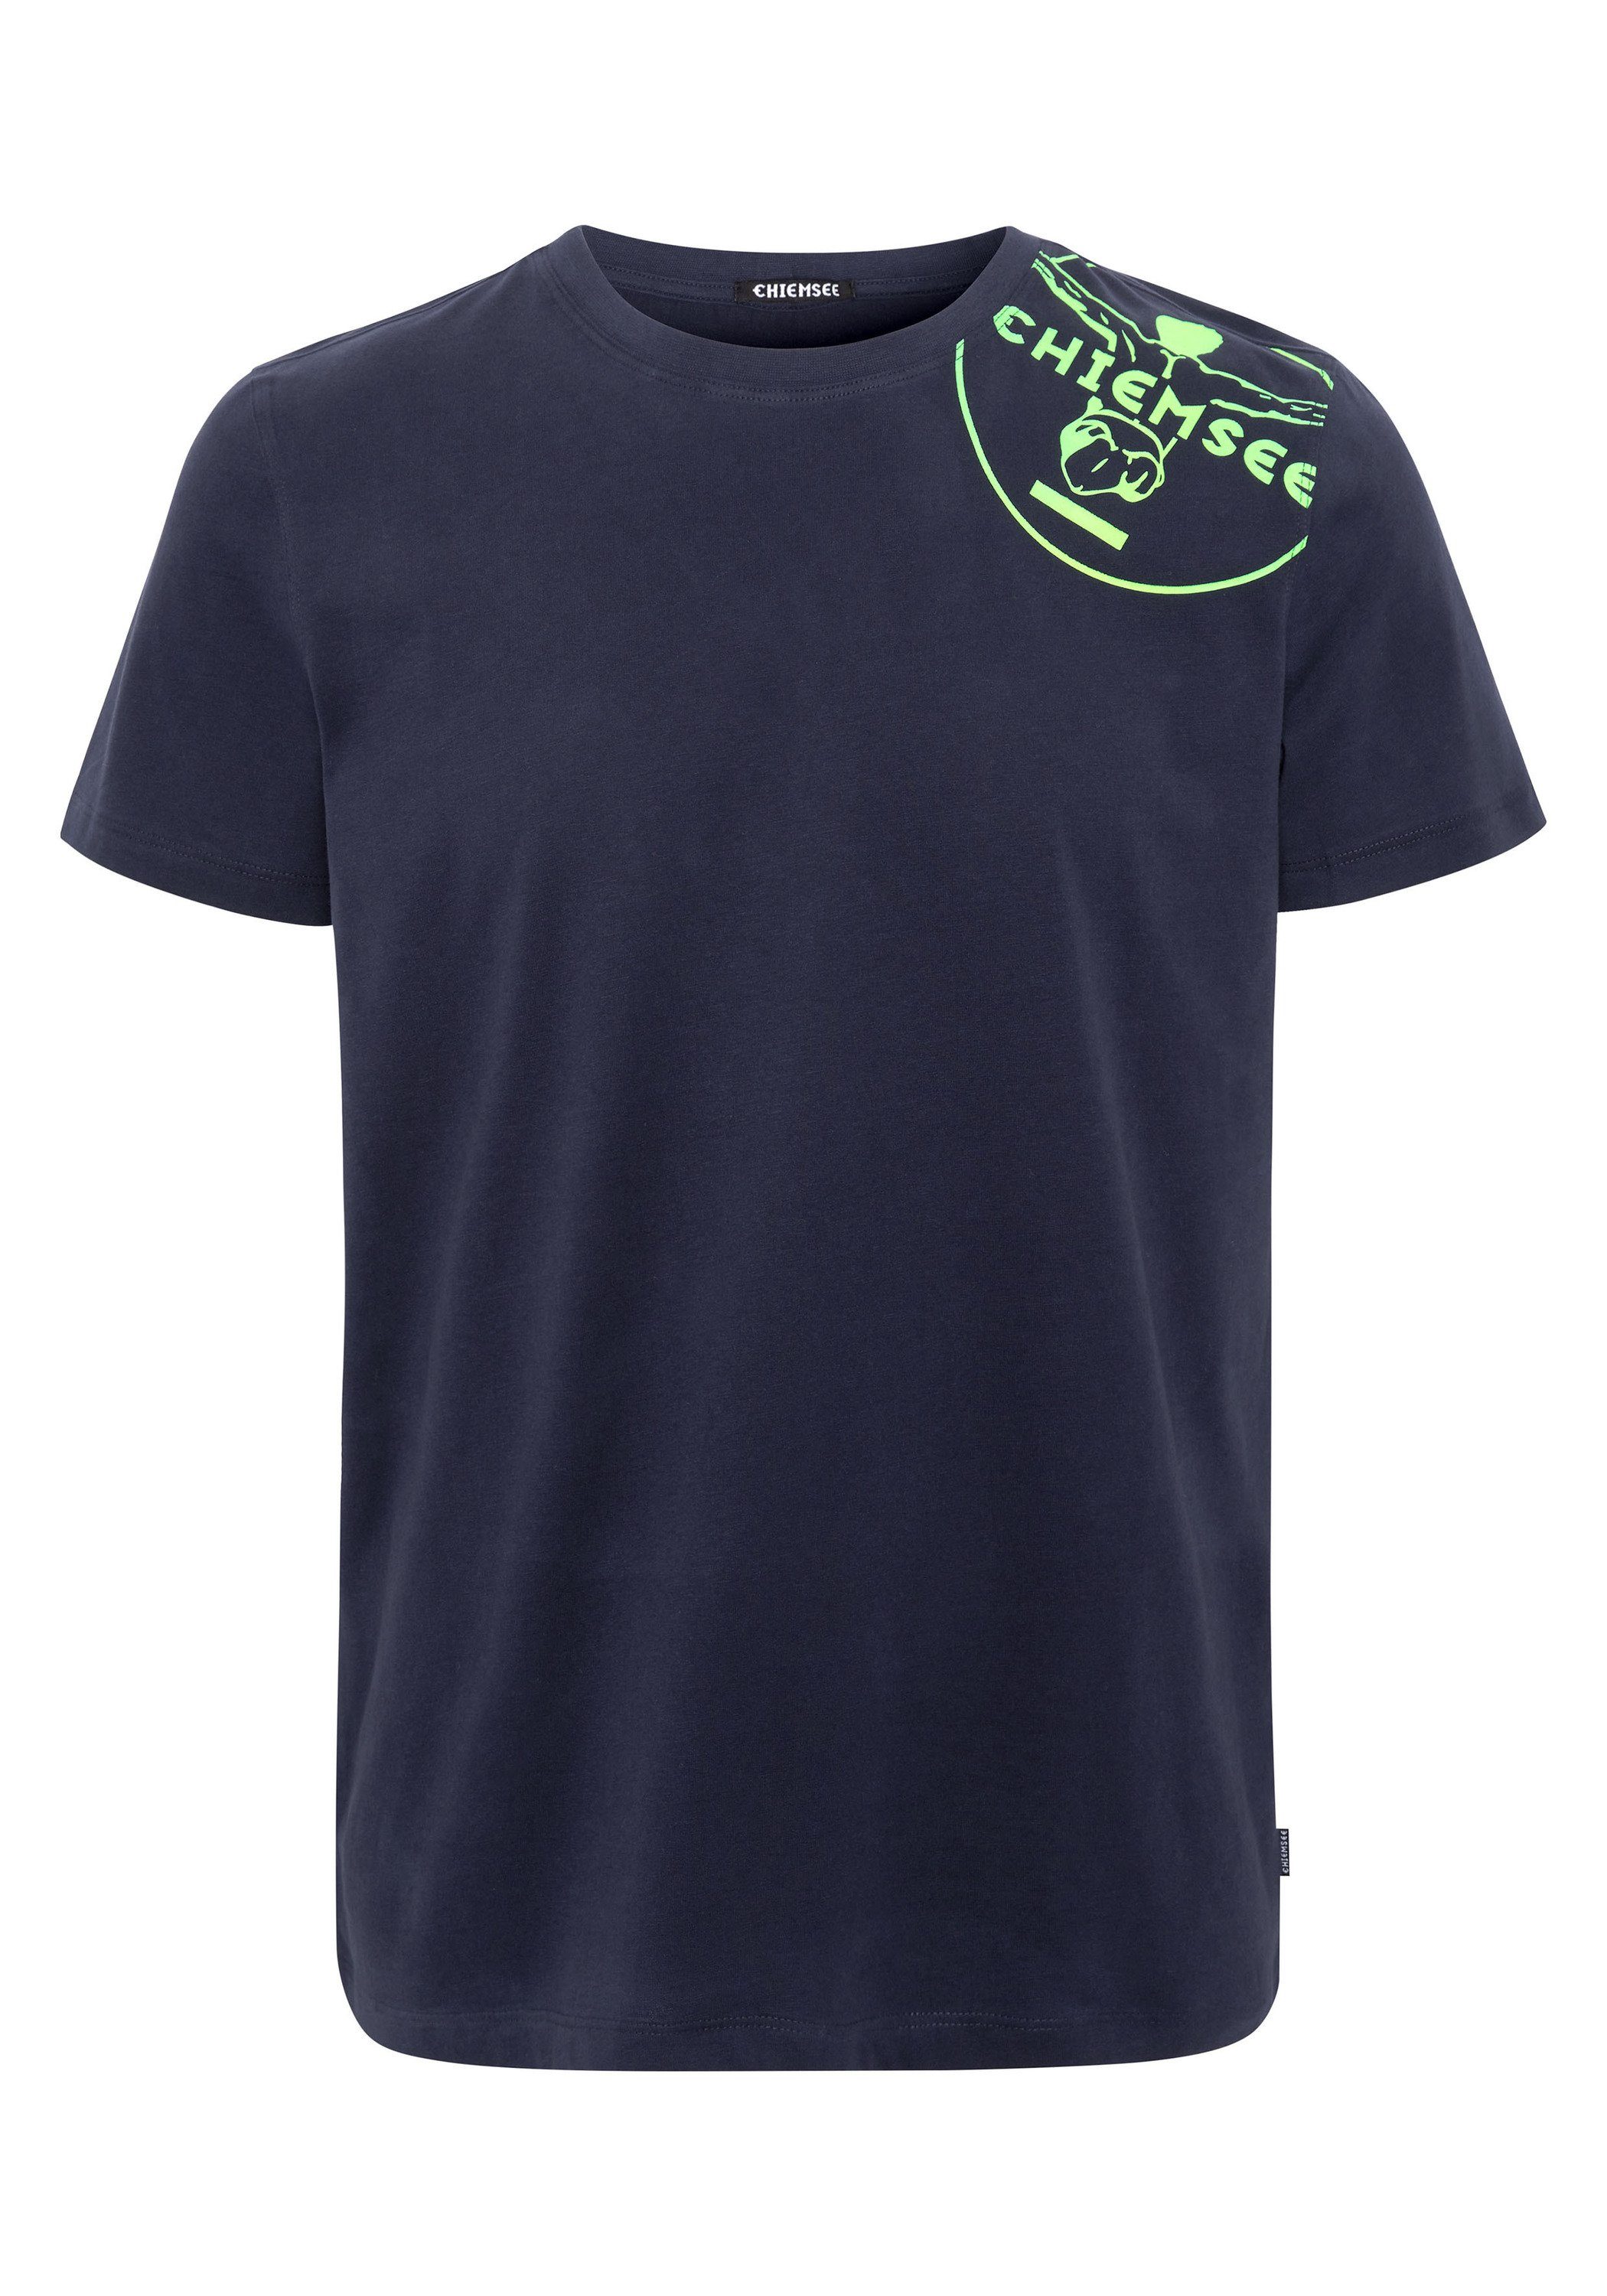 Chiemsee Print-Shirt T-Shirt mit Jumper-Motiv 1 Night Sky